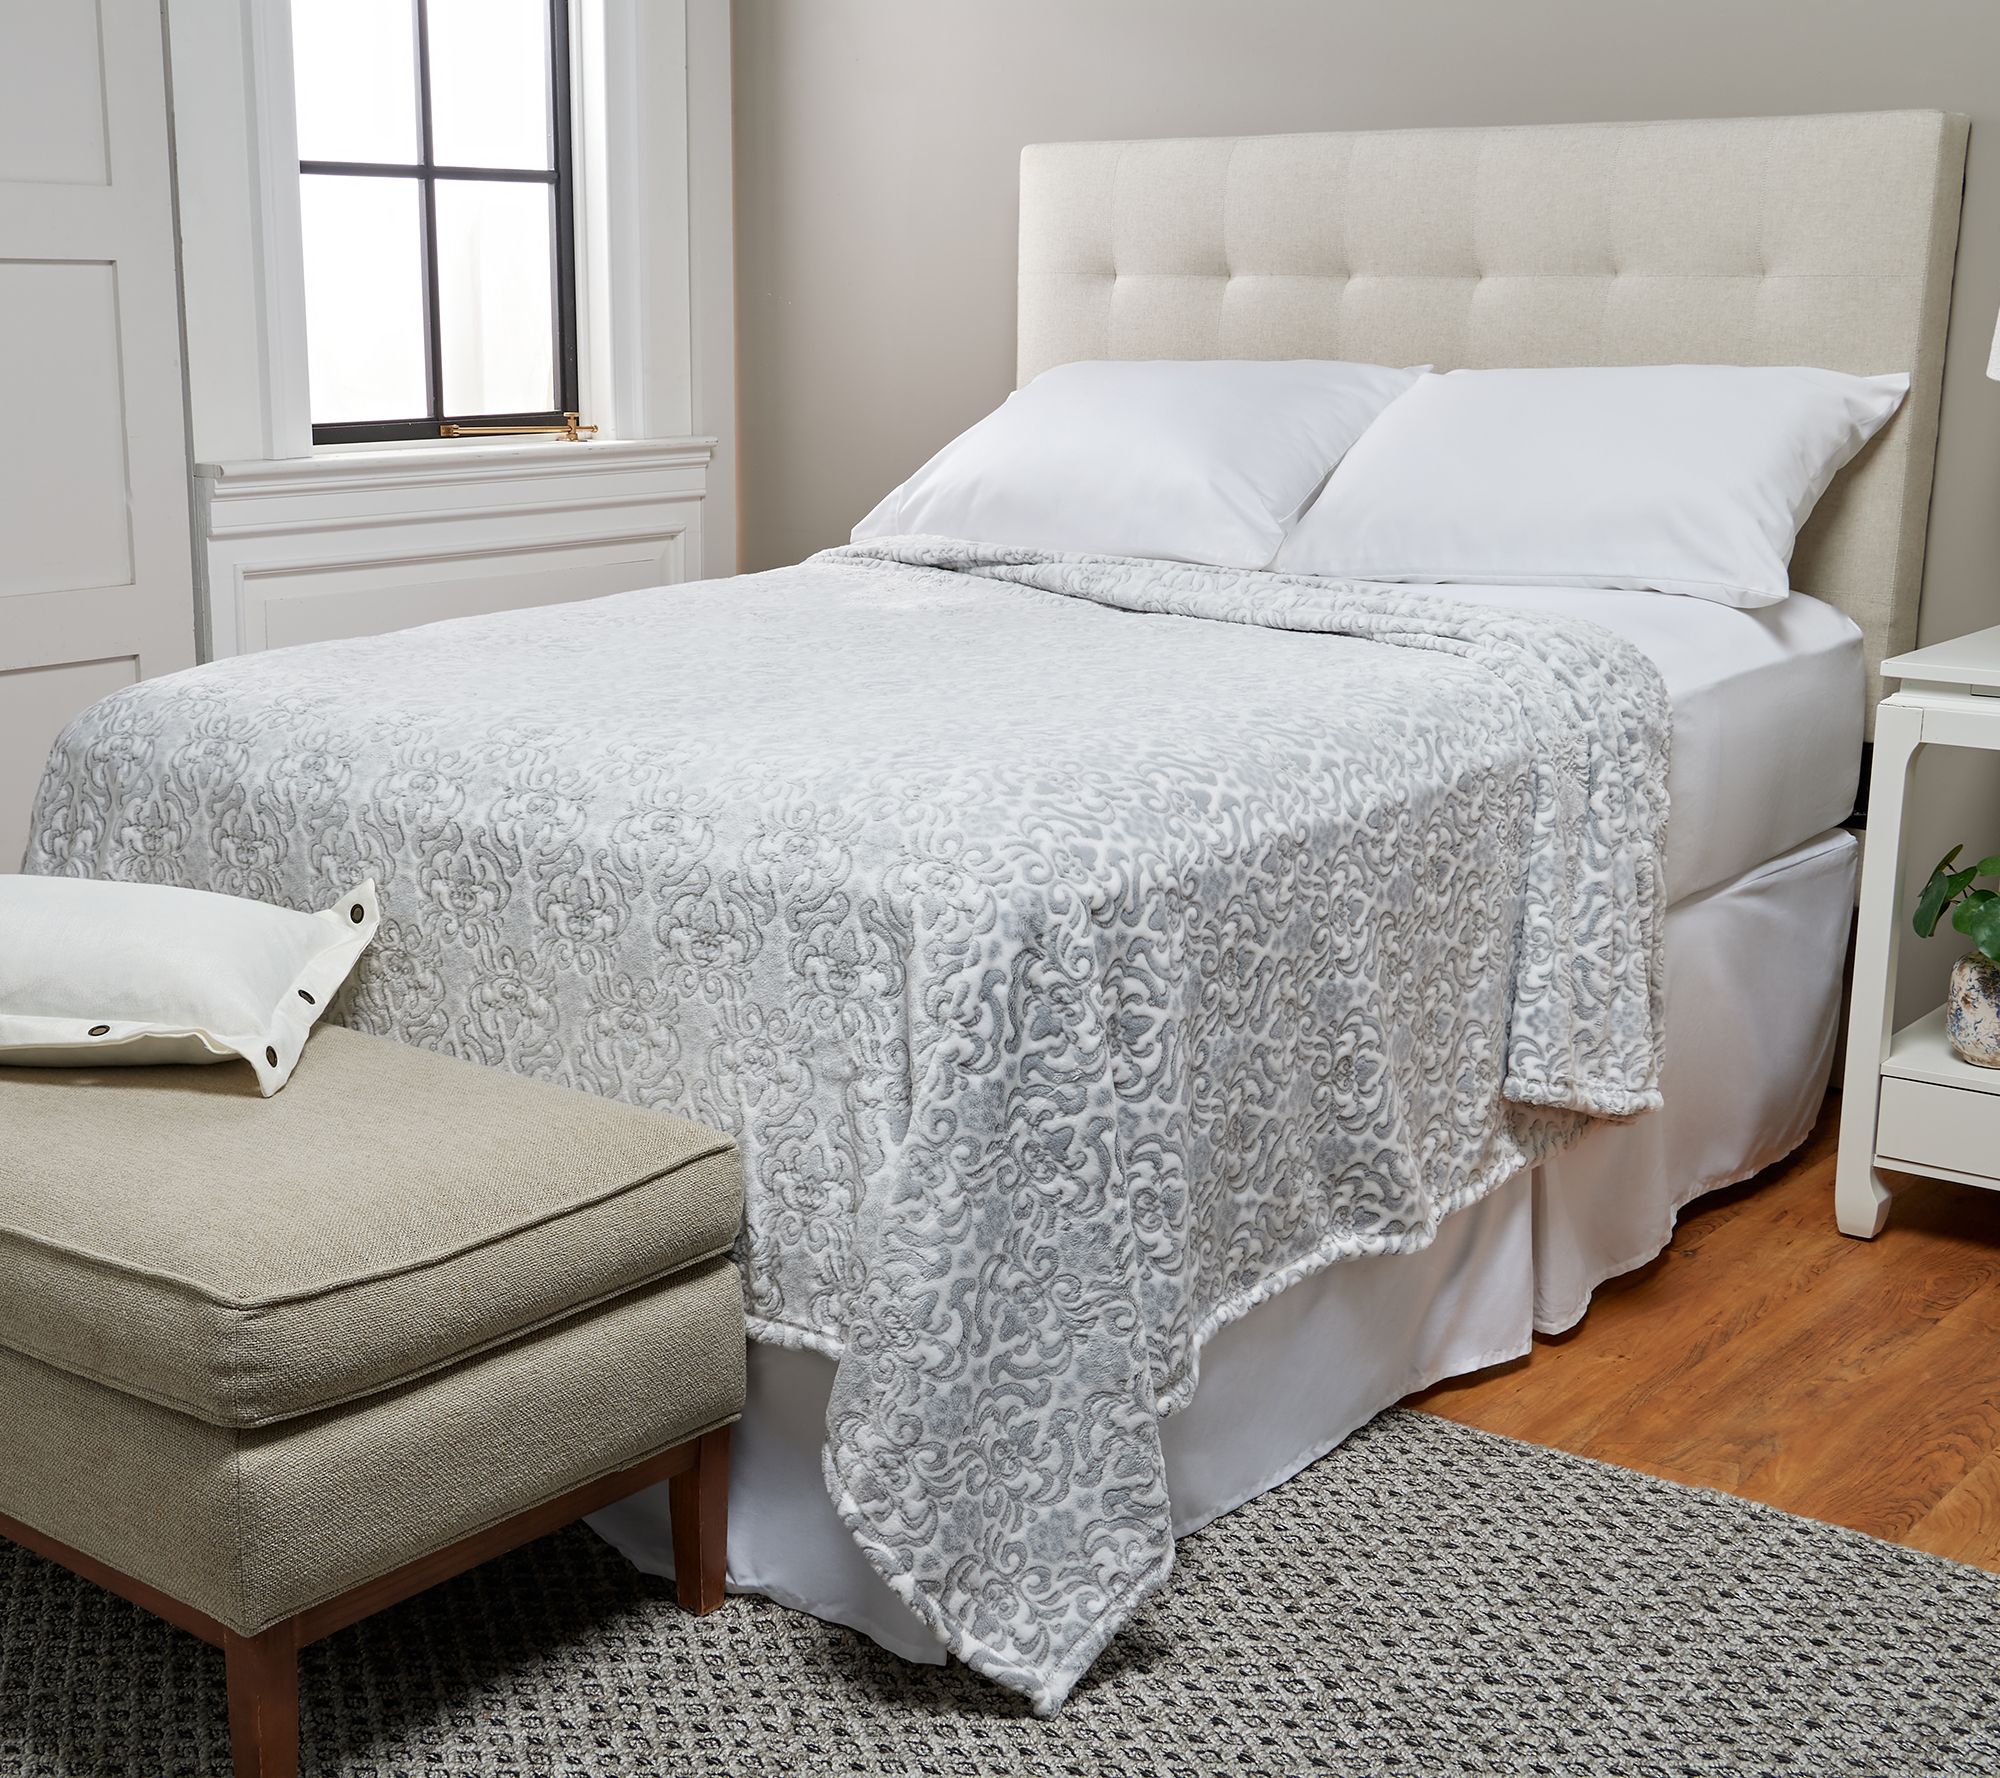 Berkshire Blanket Comfy Soft King Cotton Blanket in Natural